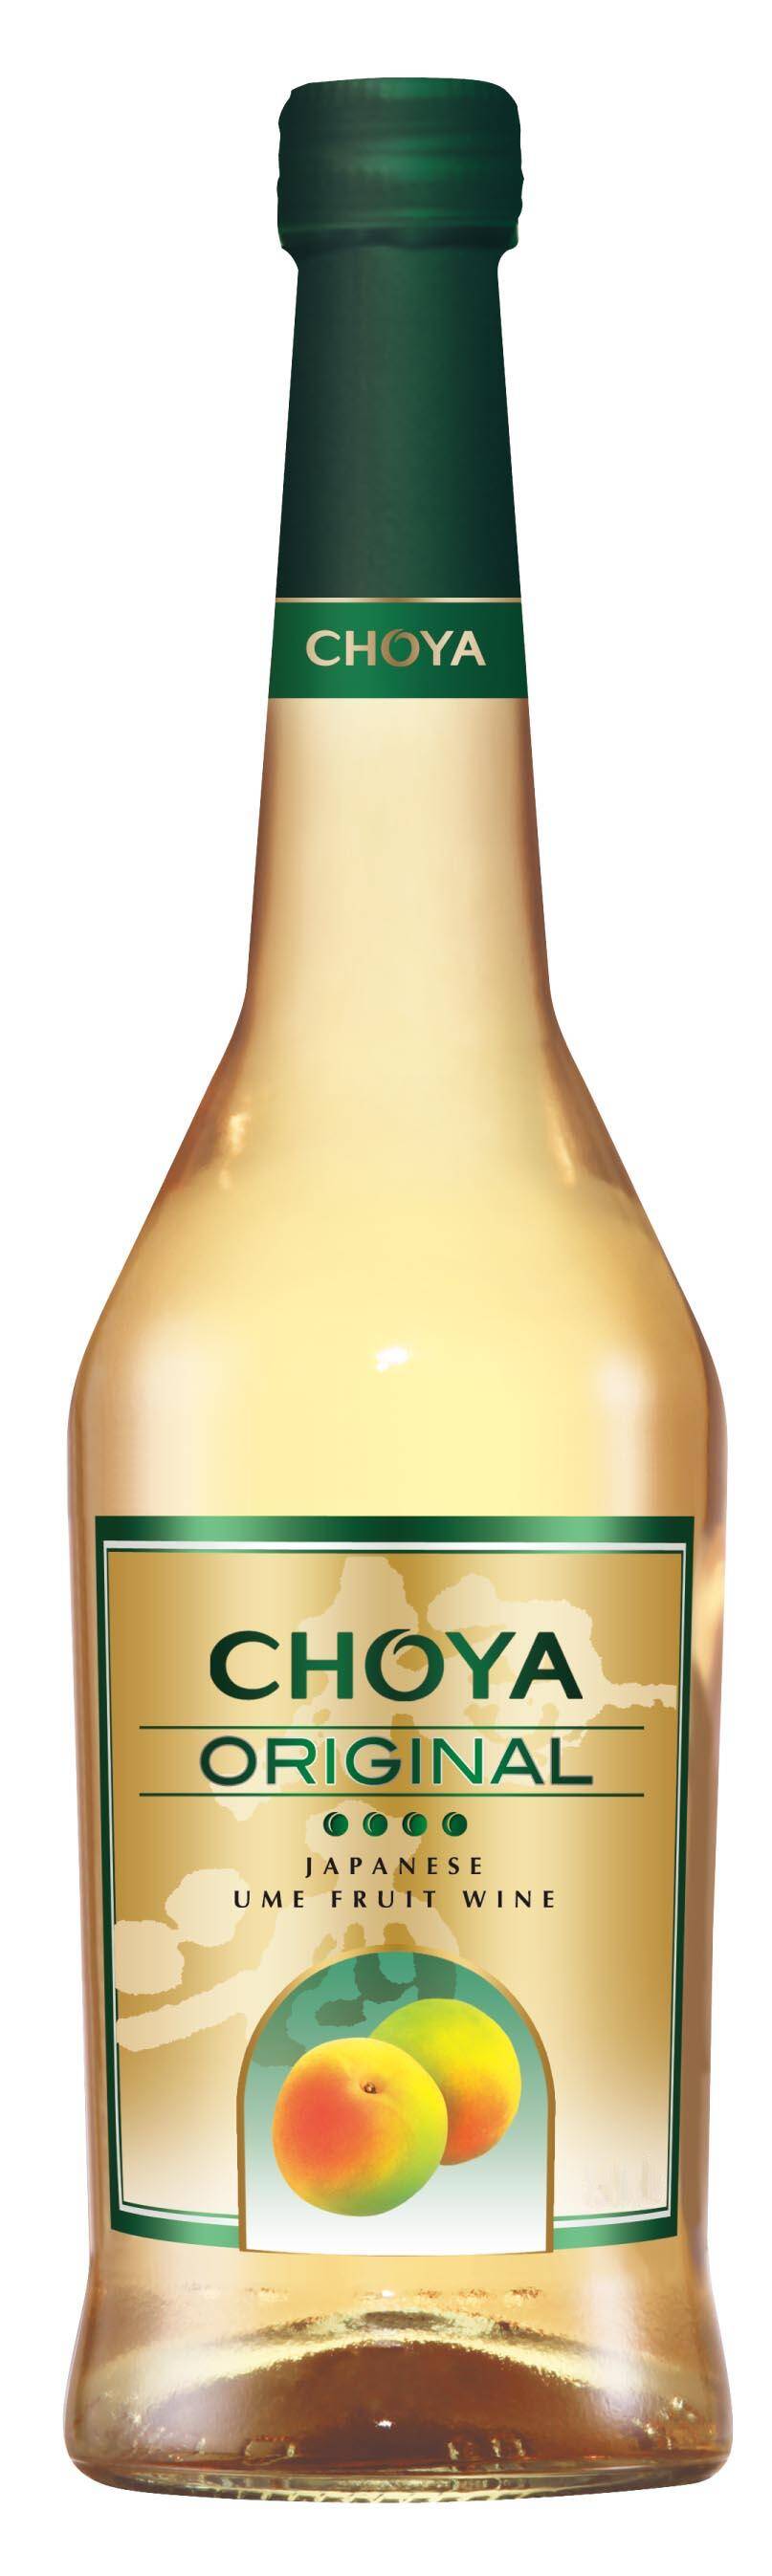 Choya Original 10%, 750ml/6 e*